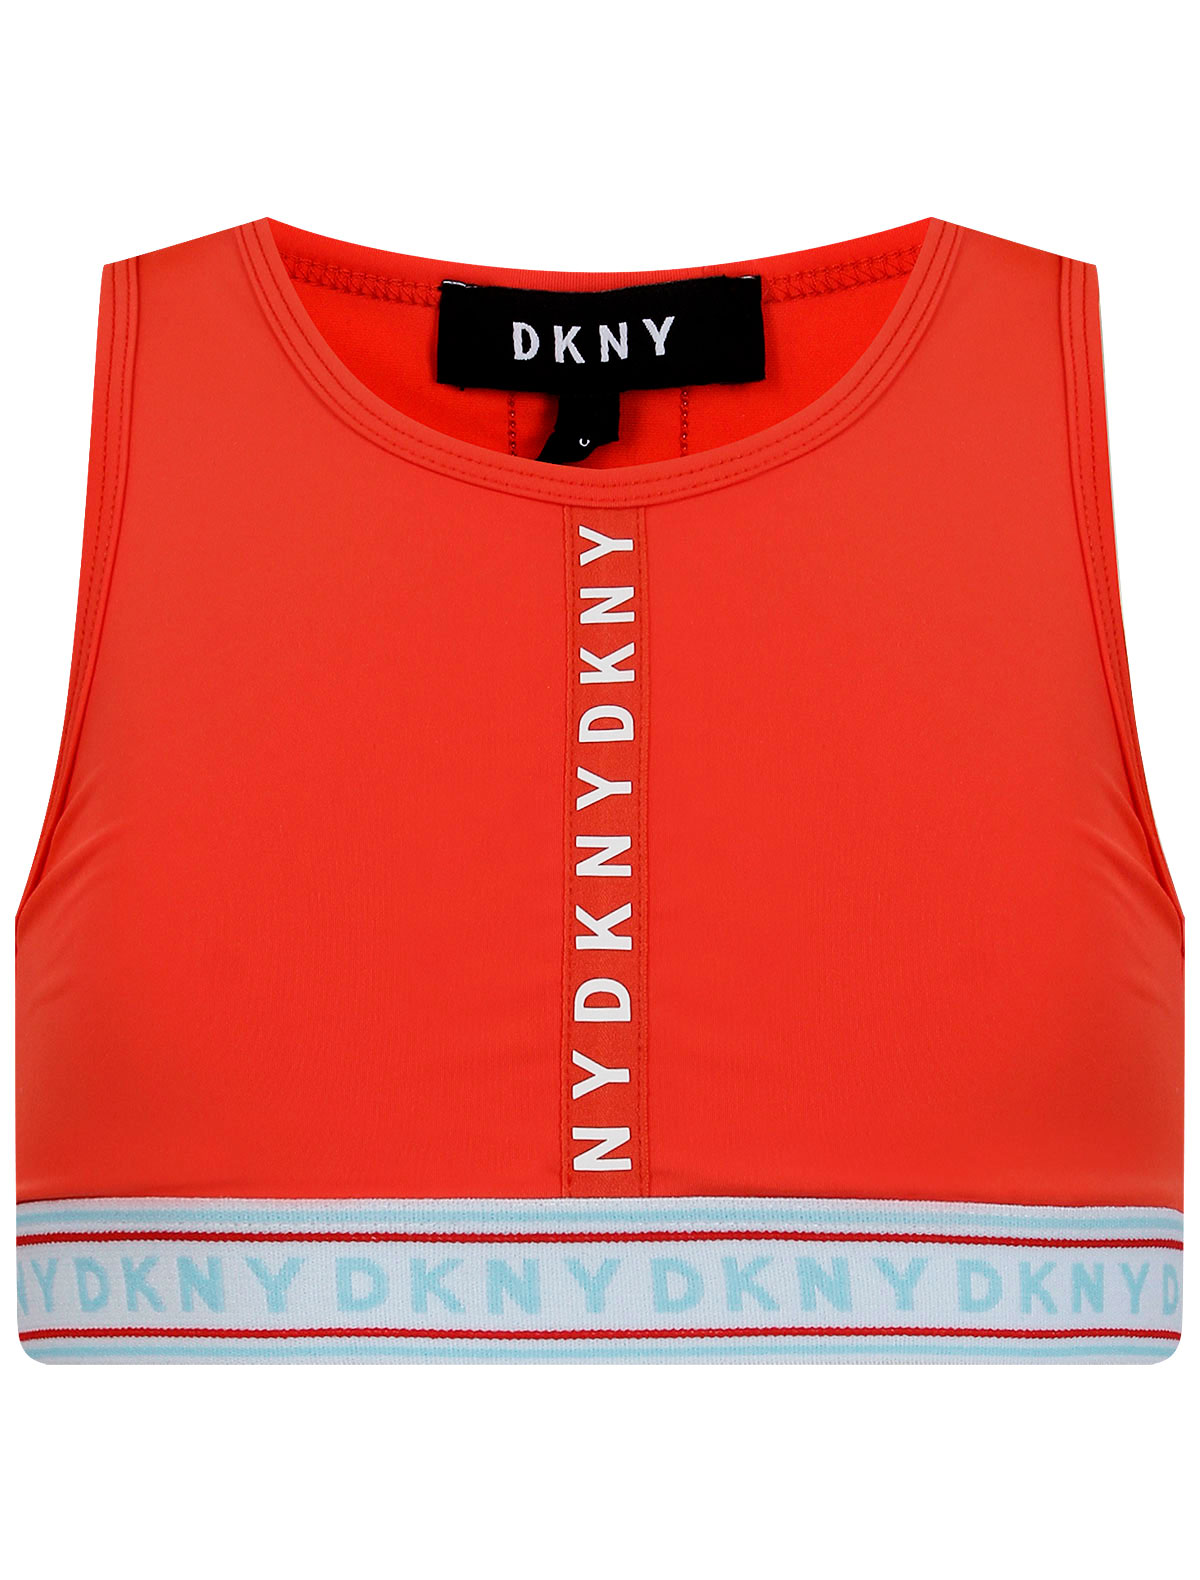 Топ DKNY красного цвета